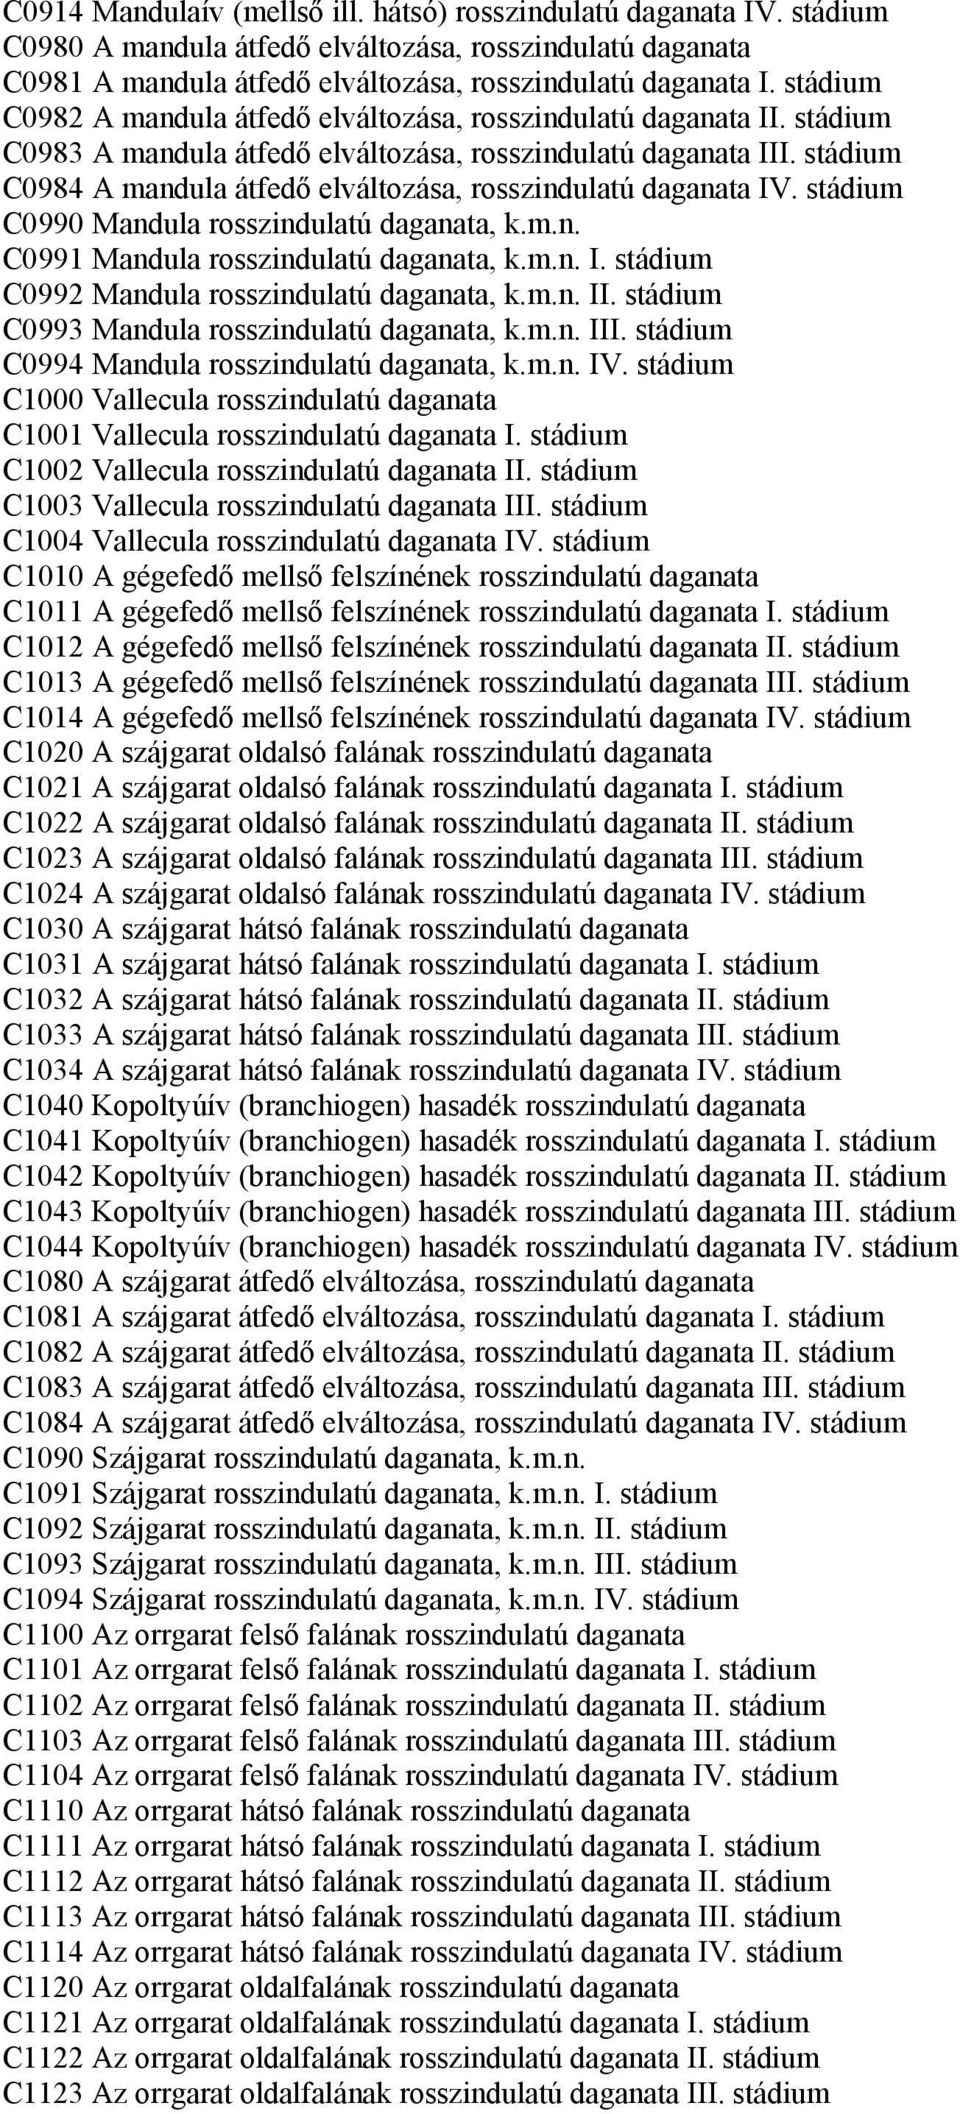 stádium C0984 A mandula átfedő elváltozása, rosszindulatú daganata IV. stádium C0990 Mandula rosszindulatú daganata, k.m.n. C0991 Mandula rosszindulatú daganata, k.m.n. I. stádium C0992 Mandula rosszindulatú daganata, k.